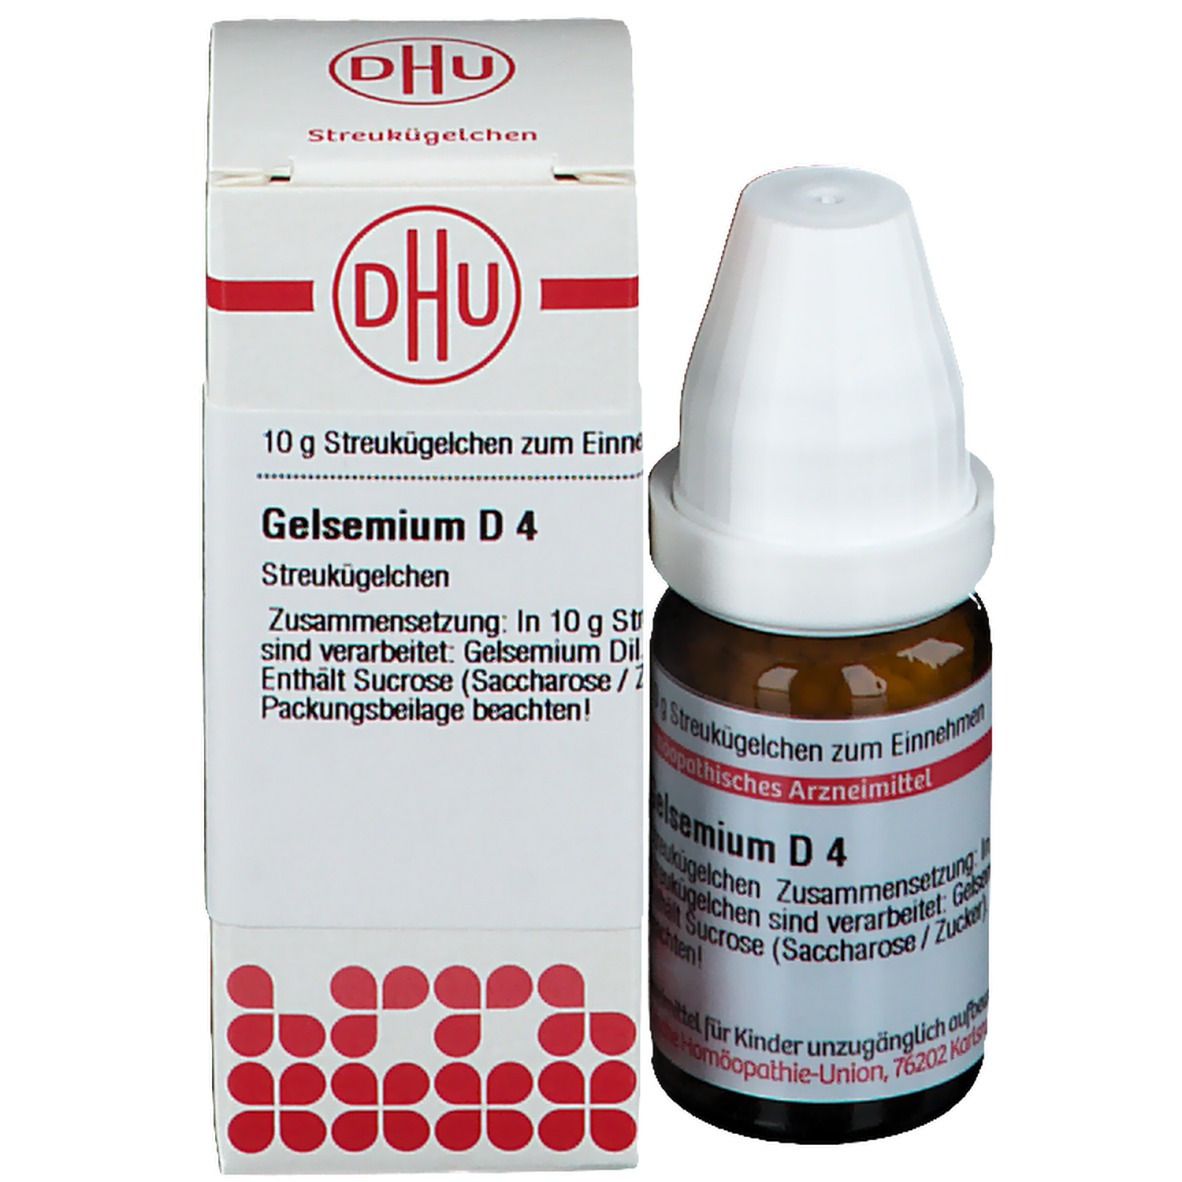 DHU Gelsemium D4